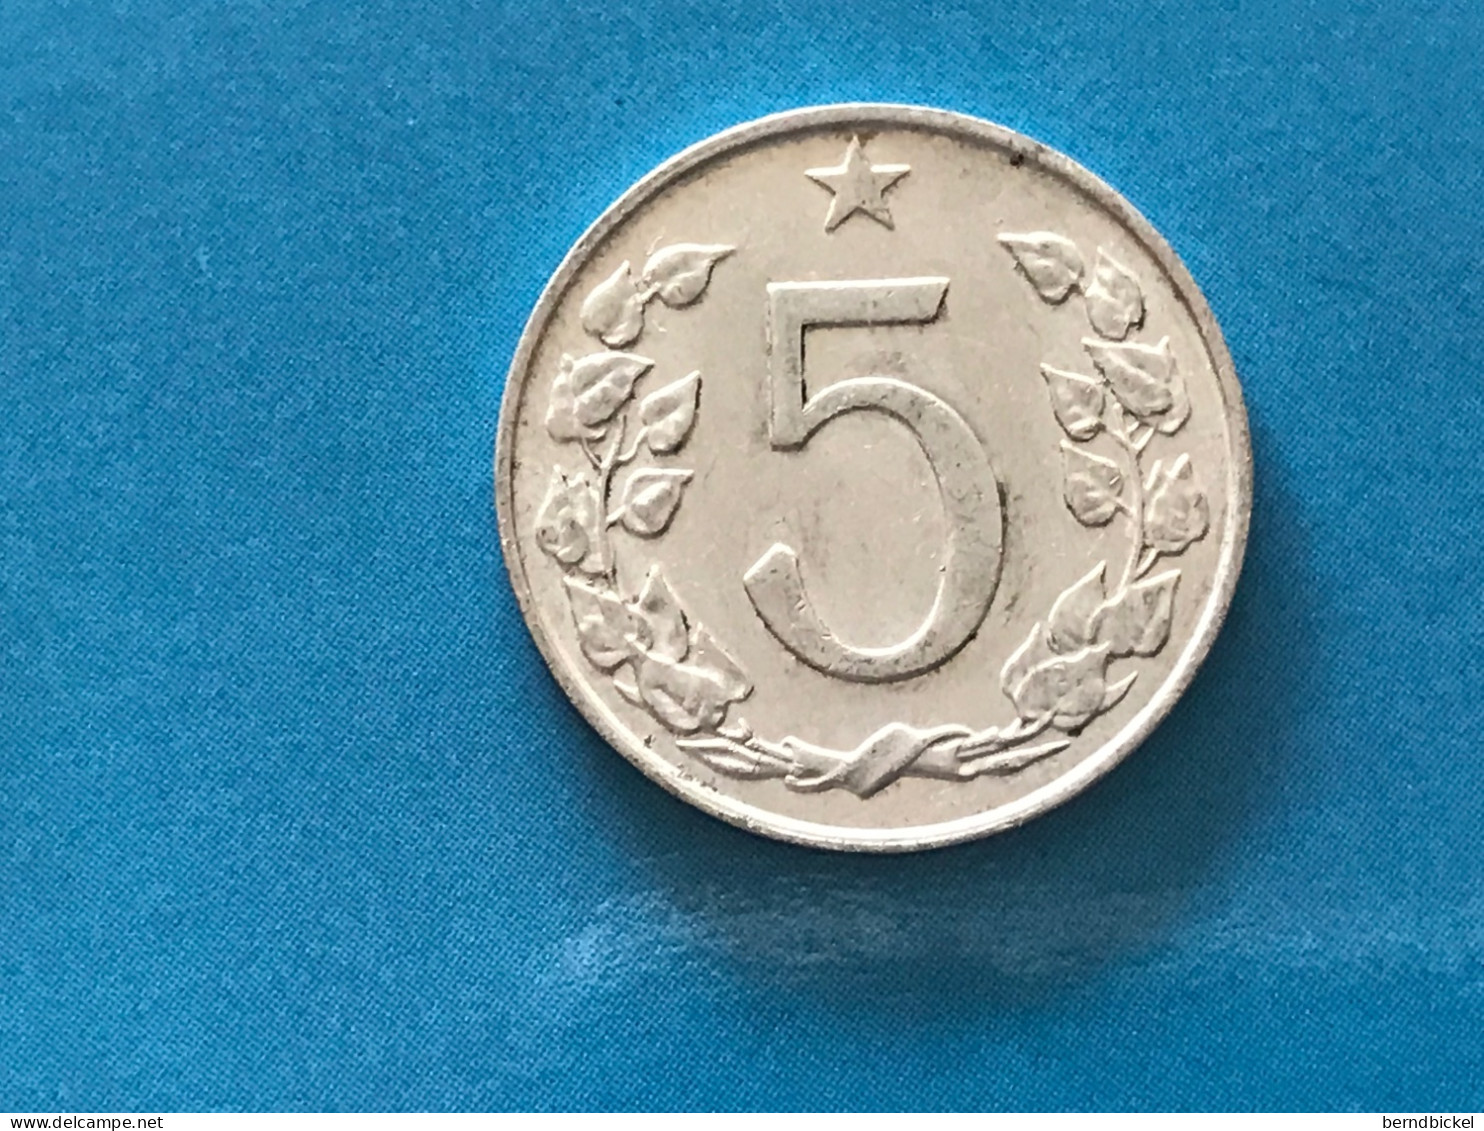 Münze Münzen Umlaufmünze Tschechoslowakei 5 Heller 1967 - Tschechoslowakei